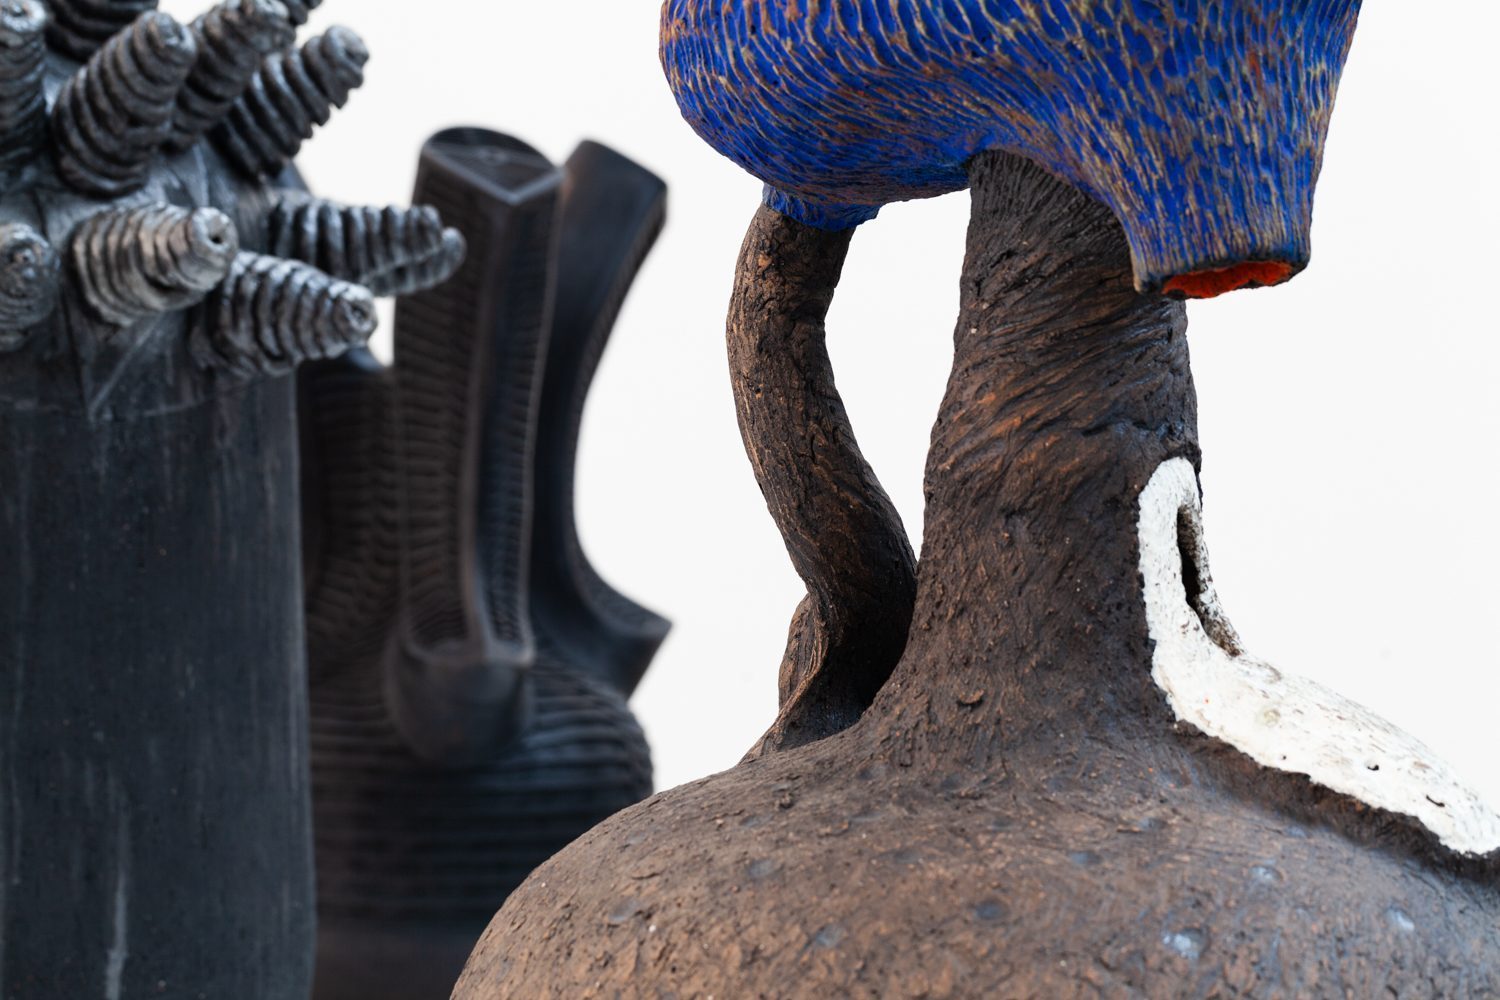 Detailaufnahmen von drei Keramikobjekten von KünstlerInnen aus Afrika